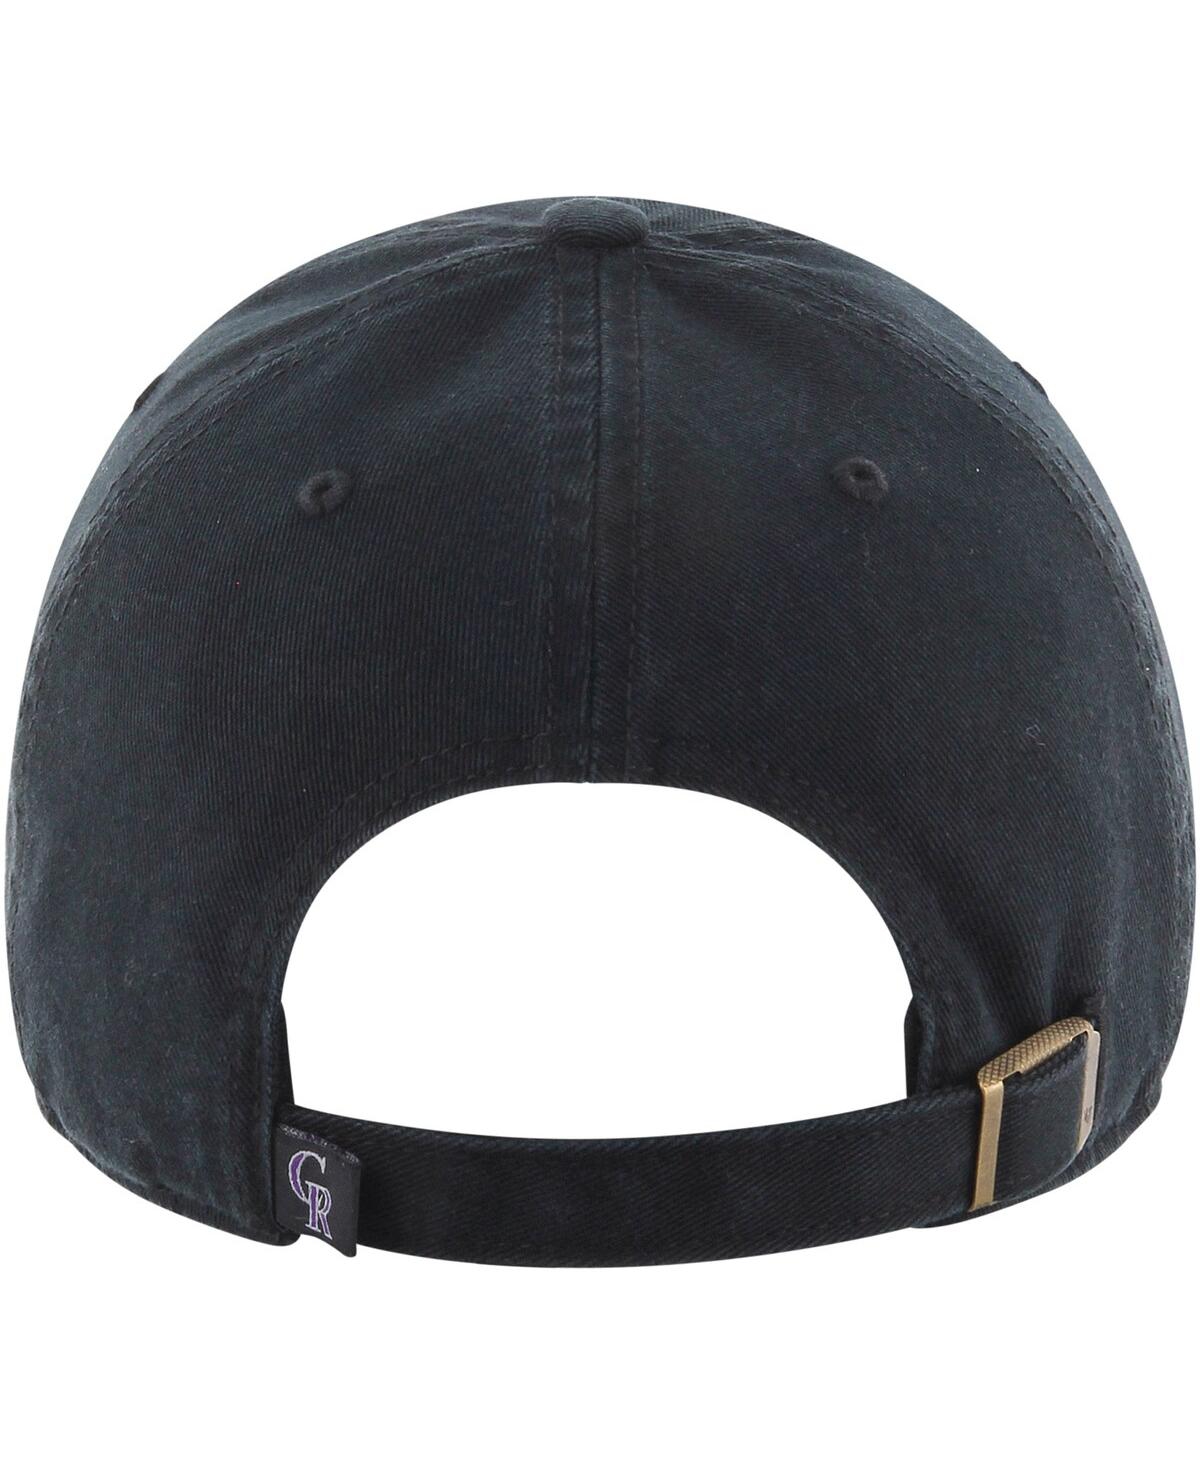 Shop 47 Brand Youth Boys ' Black Colorado Rockies Clean Up Adjustable Hat